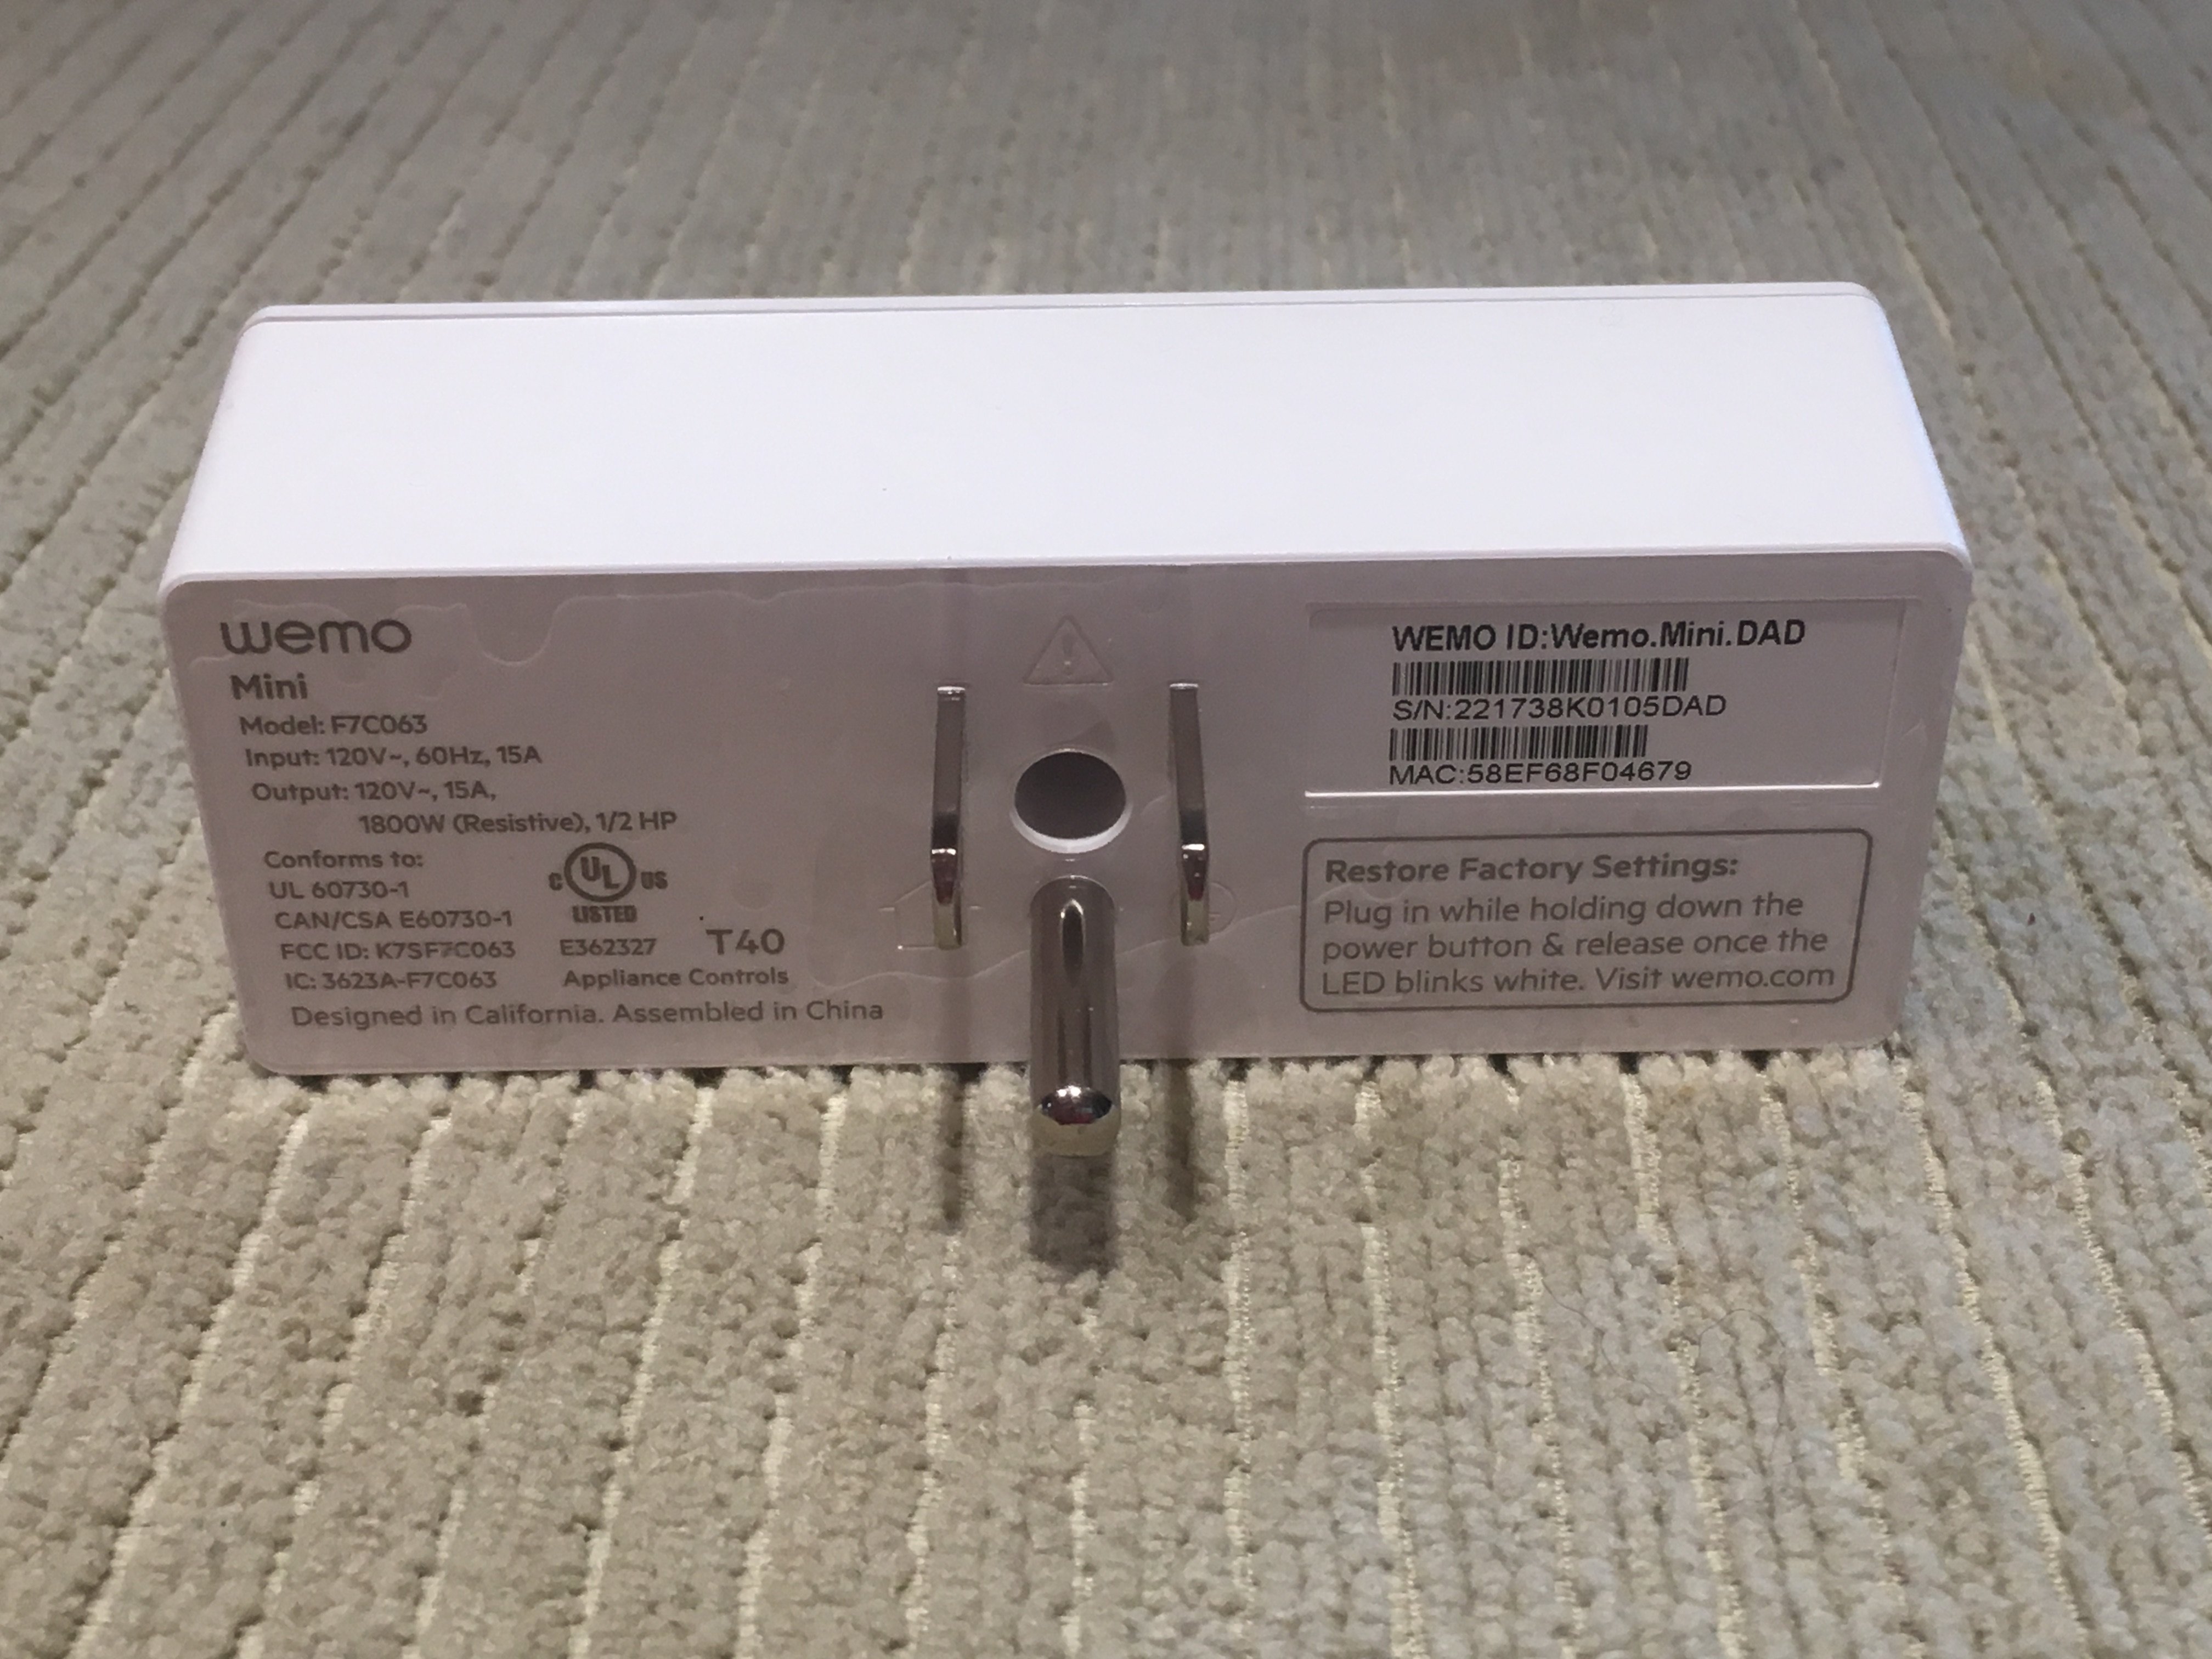 Belkin WeMo Smart Plug (F7C027fcAPL) Review 